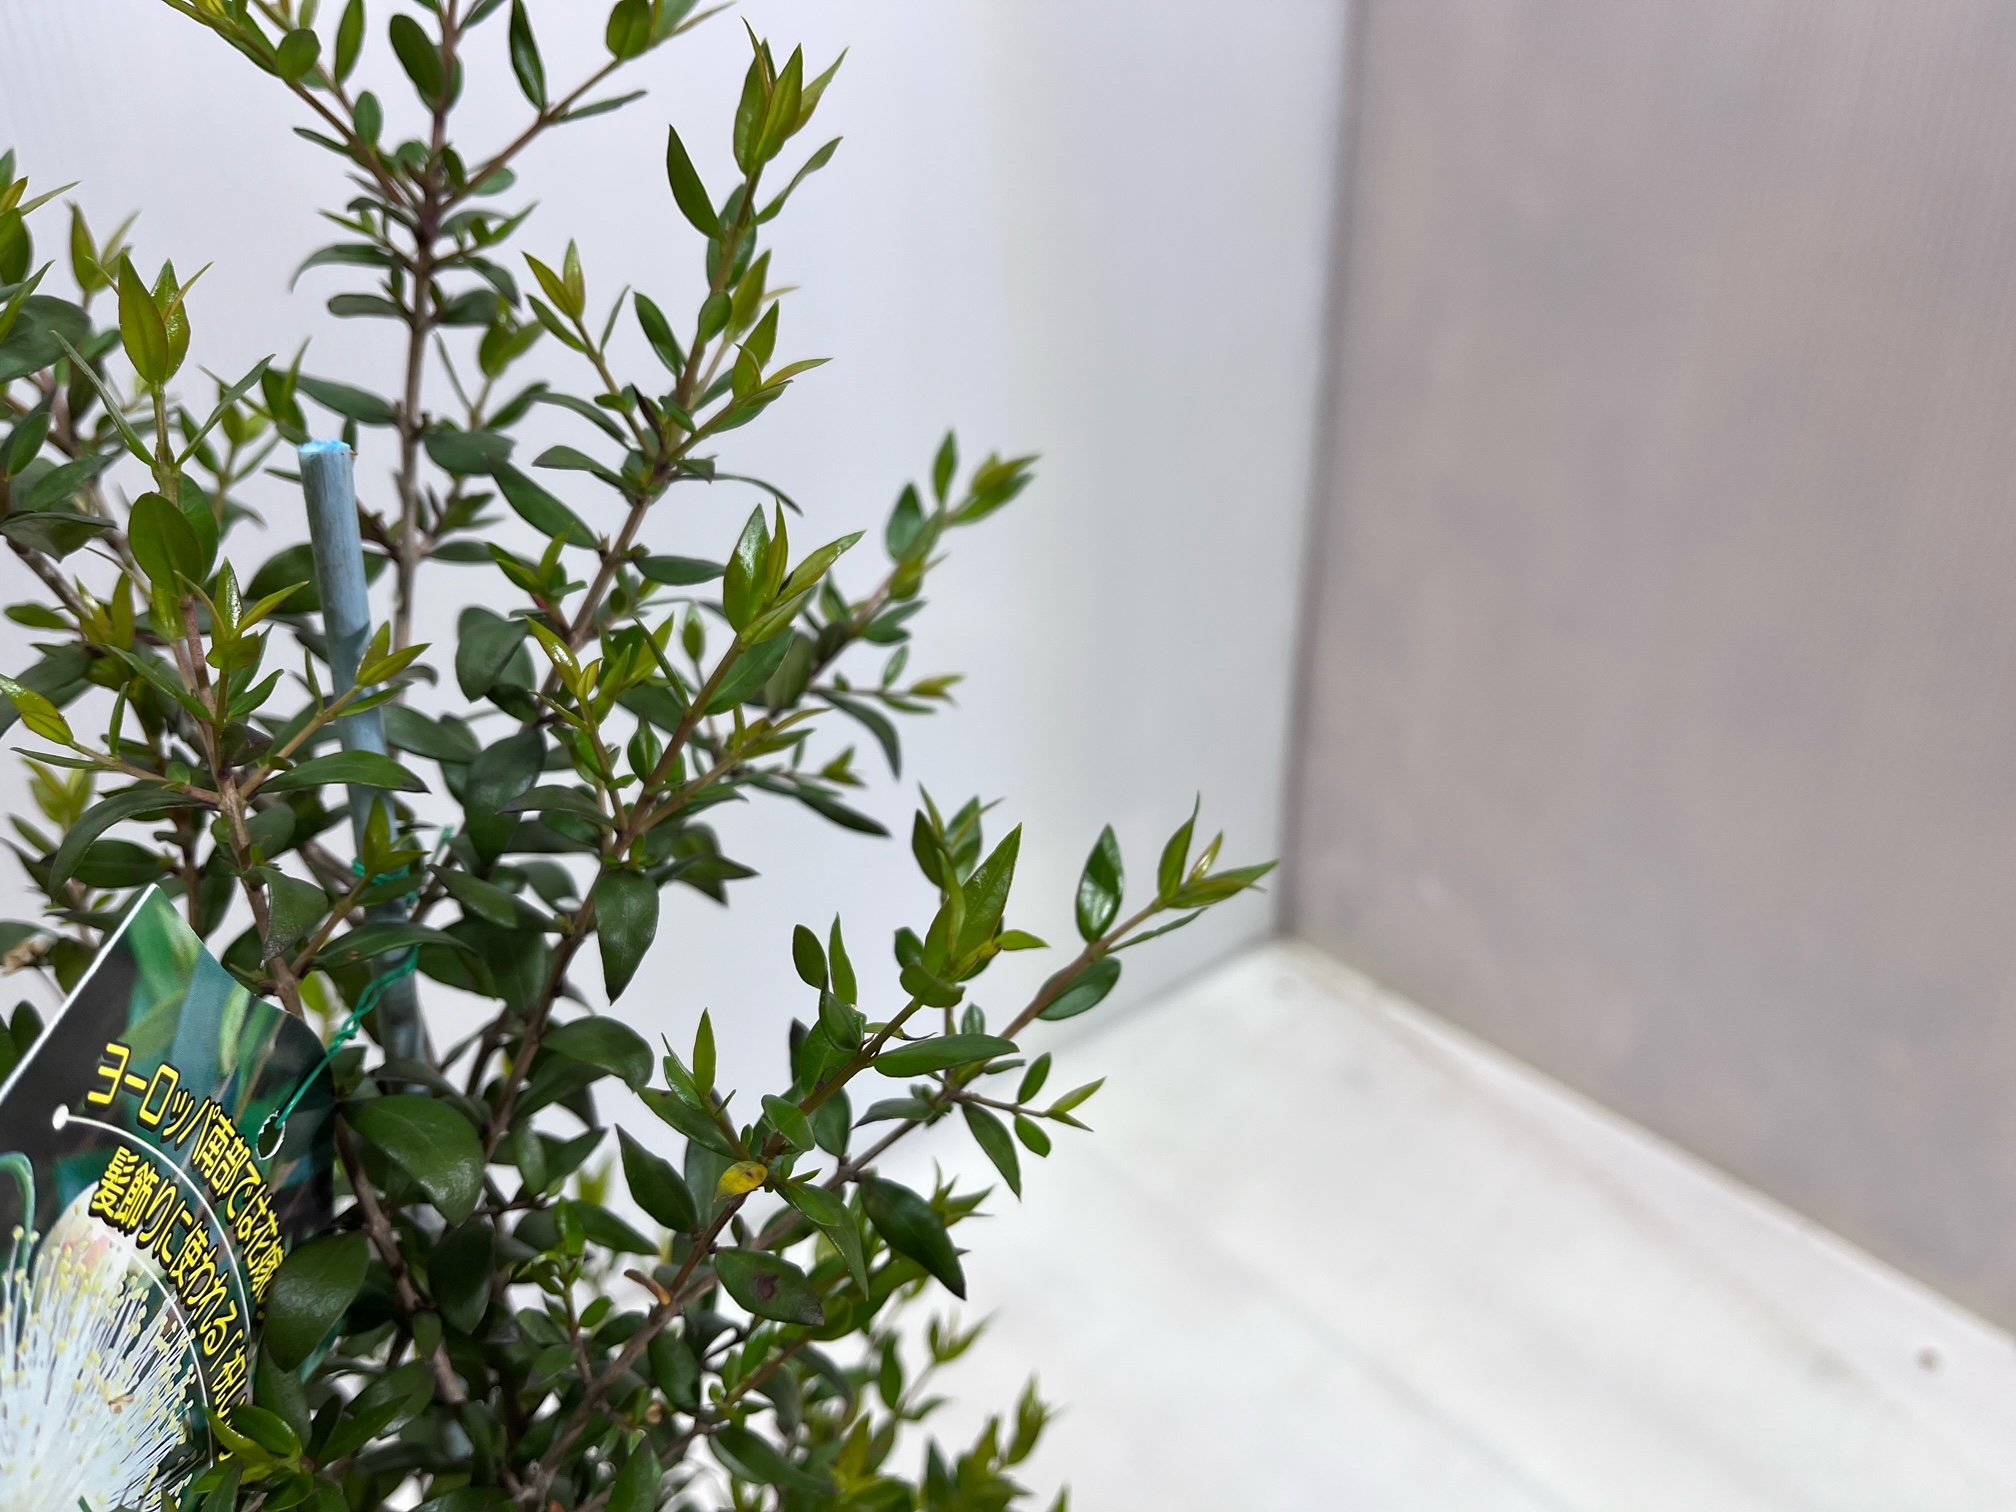  серебристый ba кальмар [ бесплатная доставка ] серебряный слива цветок 13.5cm pot рассада высота 0.4m ширина 0.2m вечнозеленое дерево сырой . японский стиль природа способ растение садовое дерево саженец 